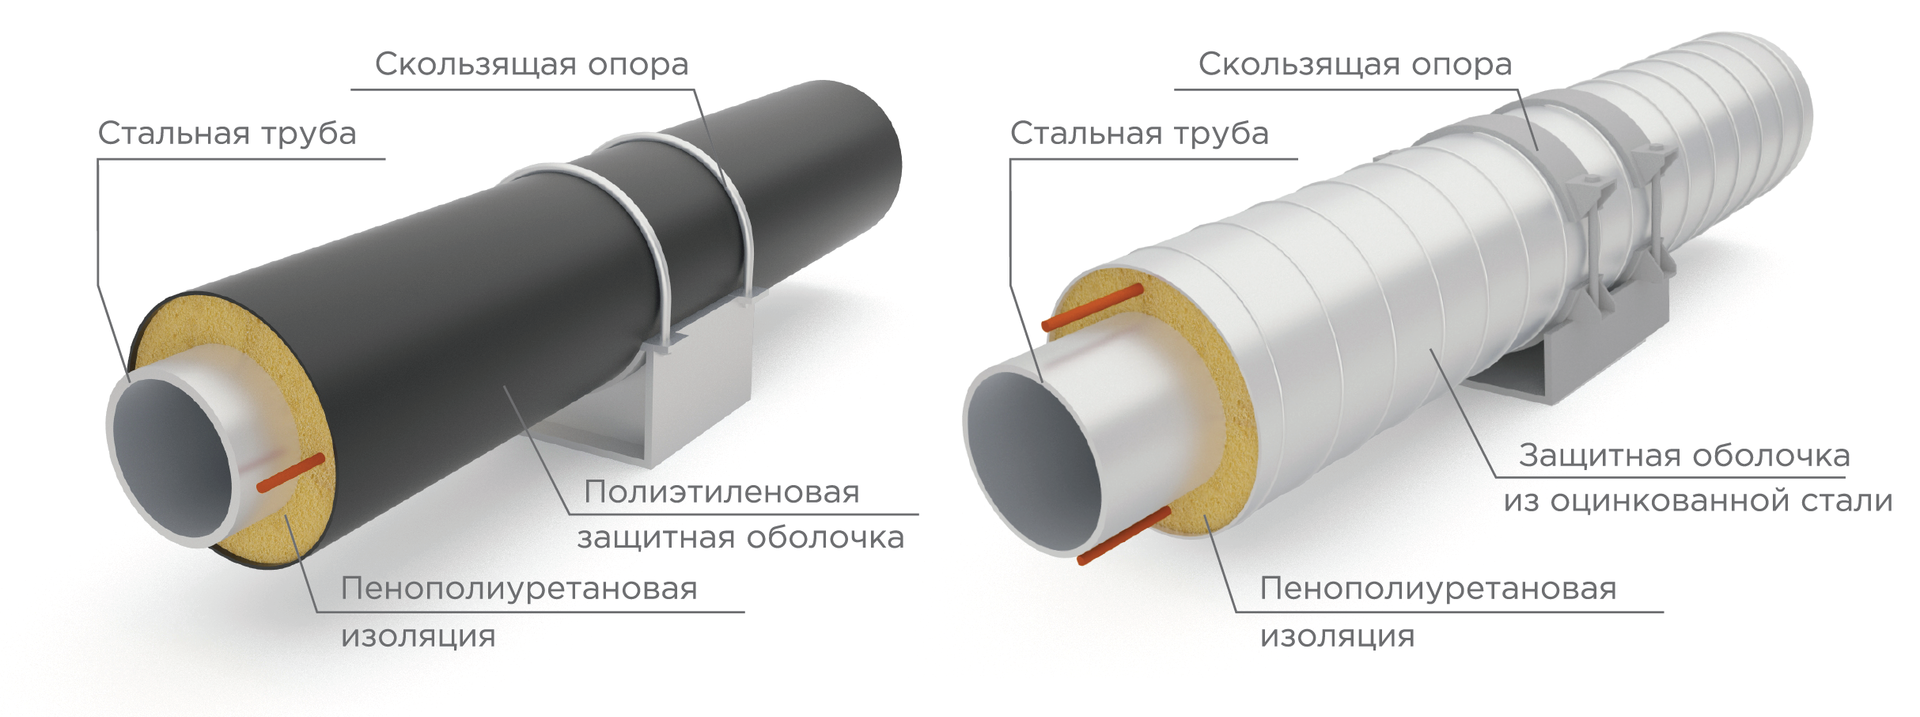 Изоляция стальных труб, виды и способы применения: пенополиуретановая (ппу) или пенополимерминеральная (ппм) изоляция, внутренняя